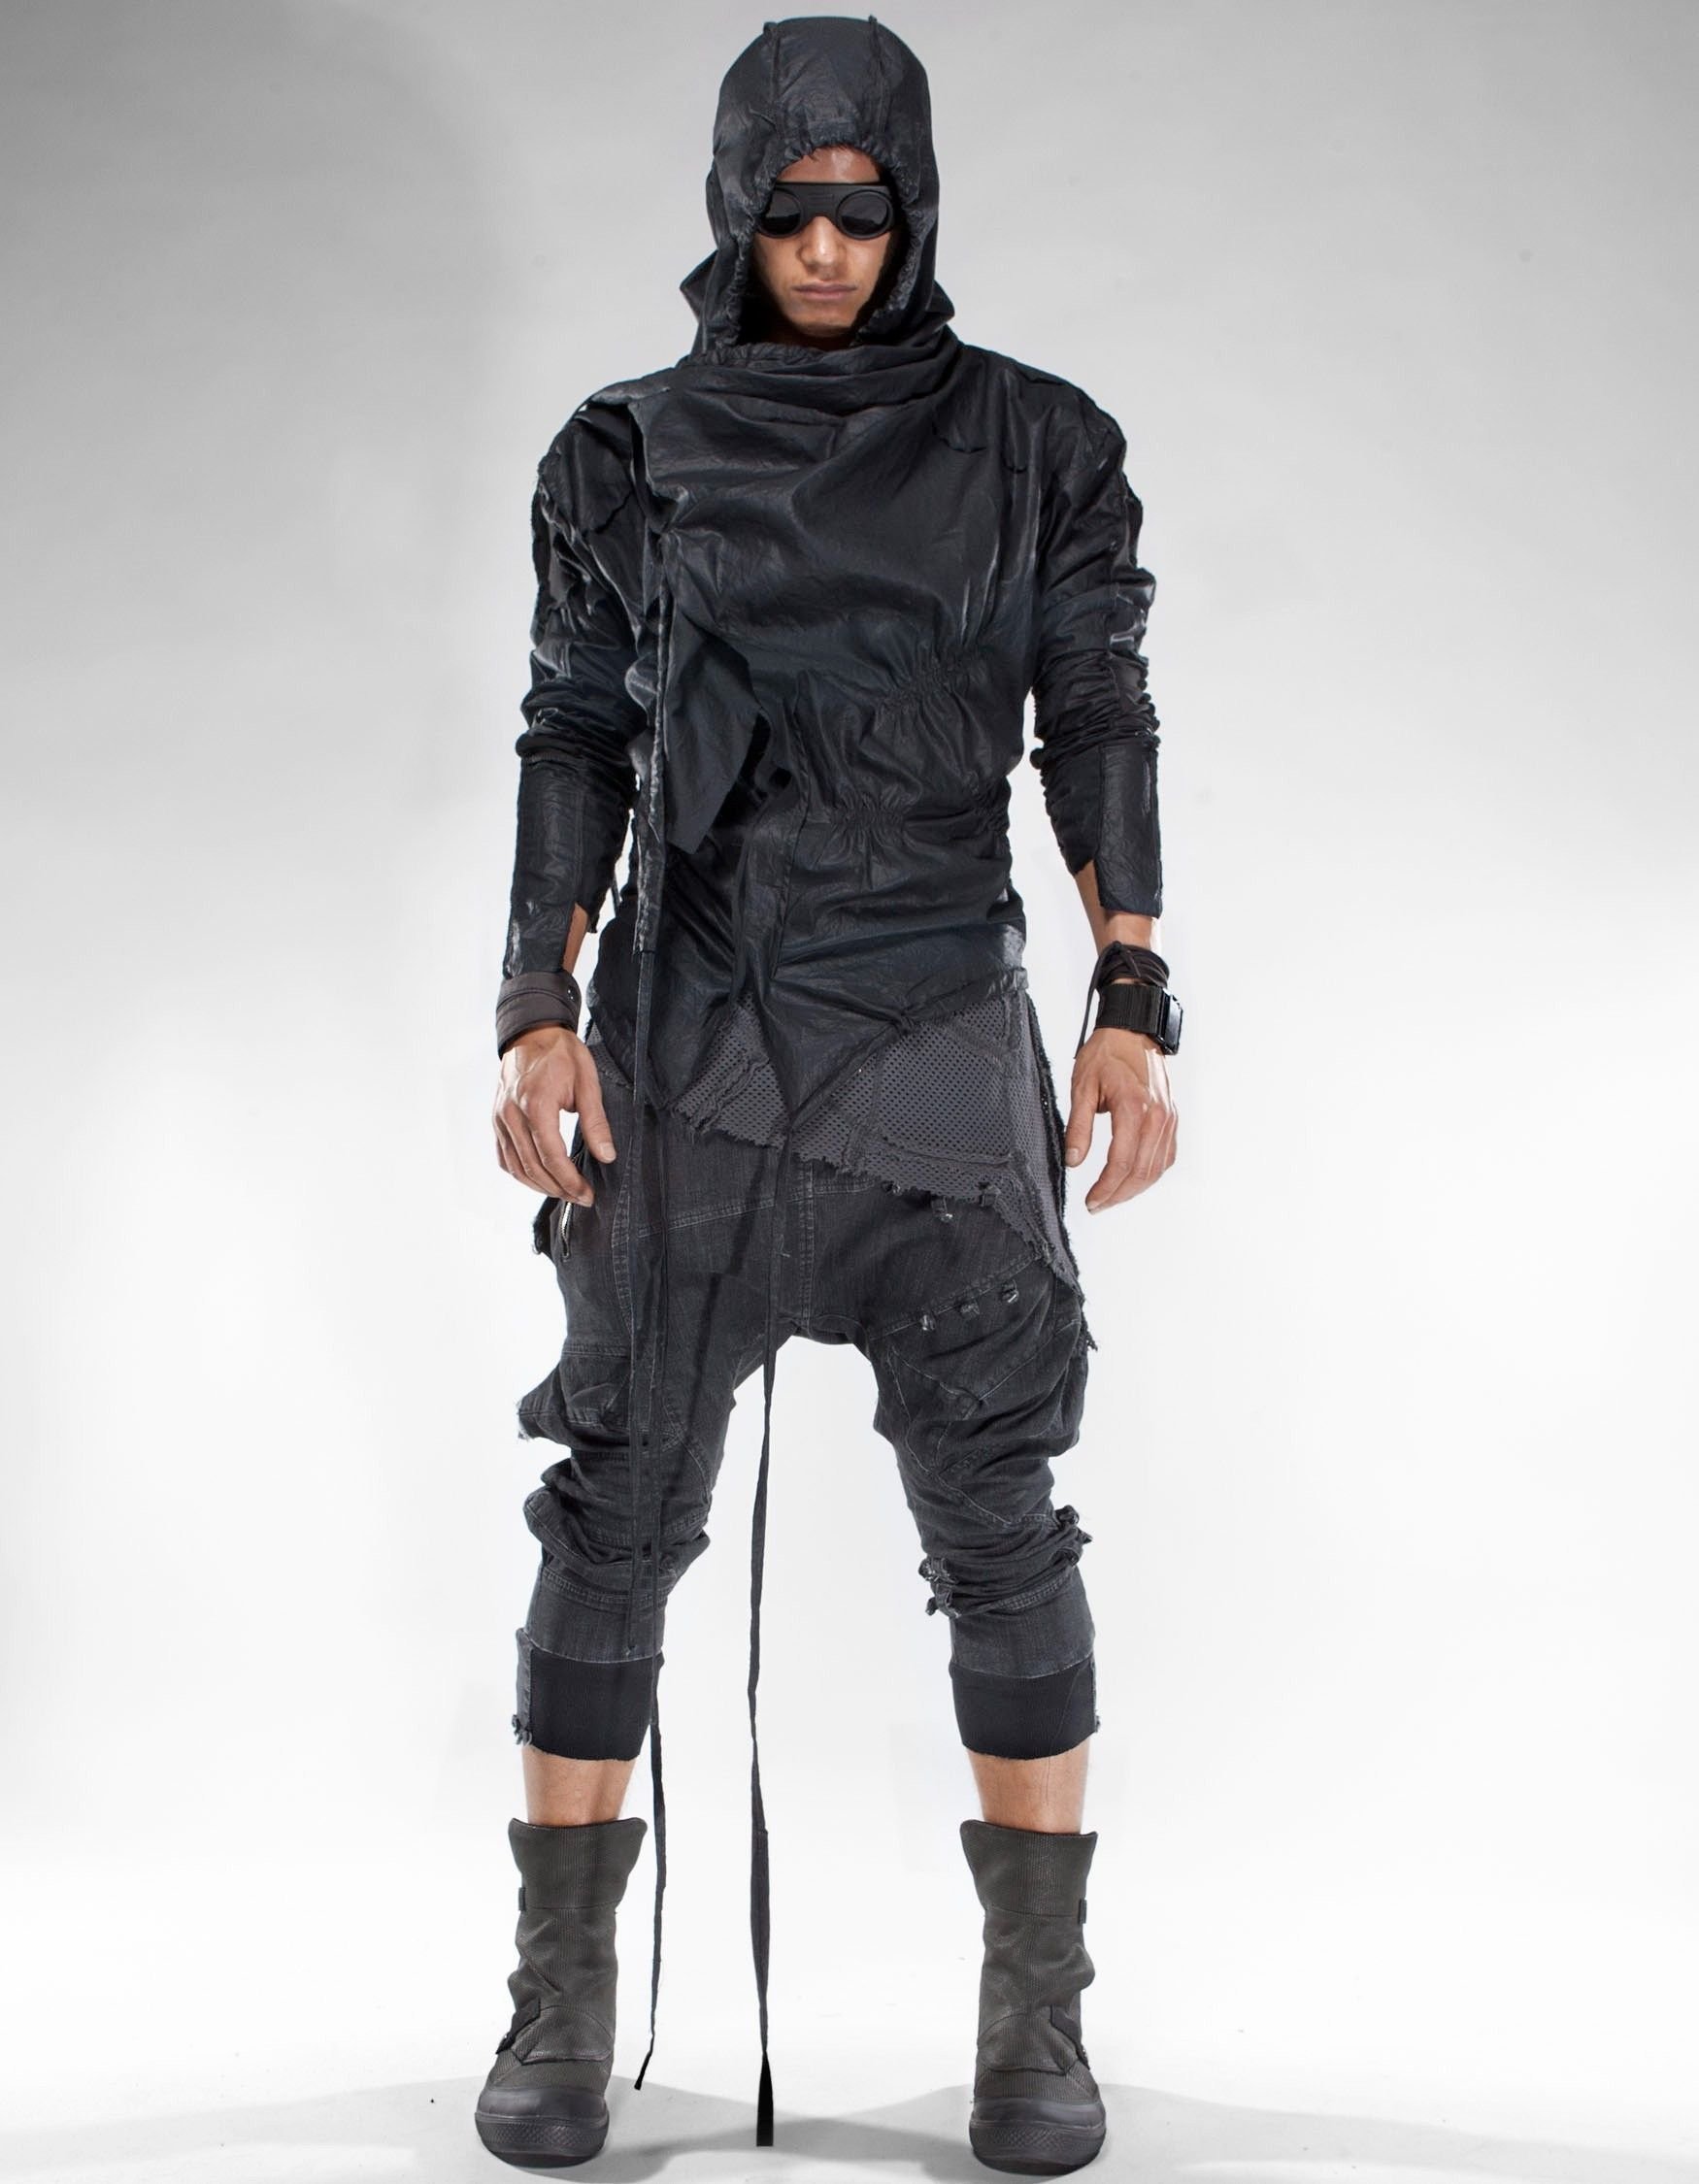 Cyberpunk стиль одежды мужской фото 10